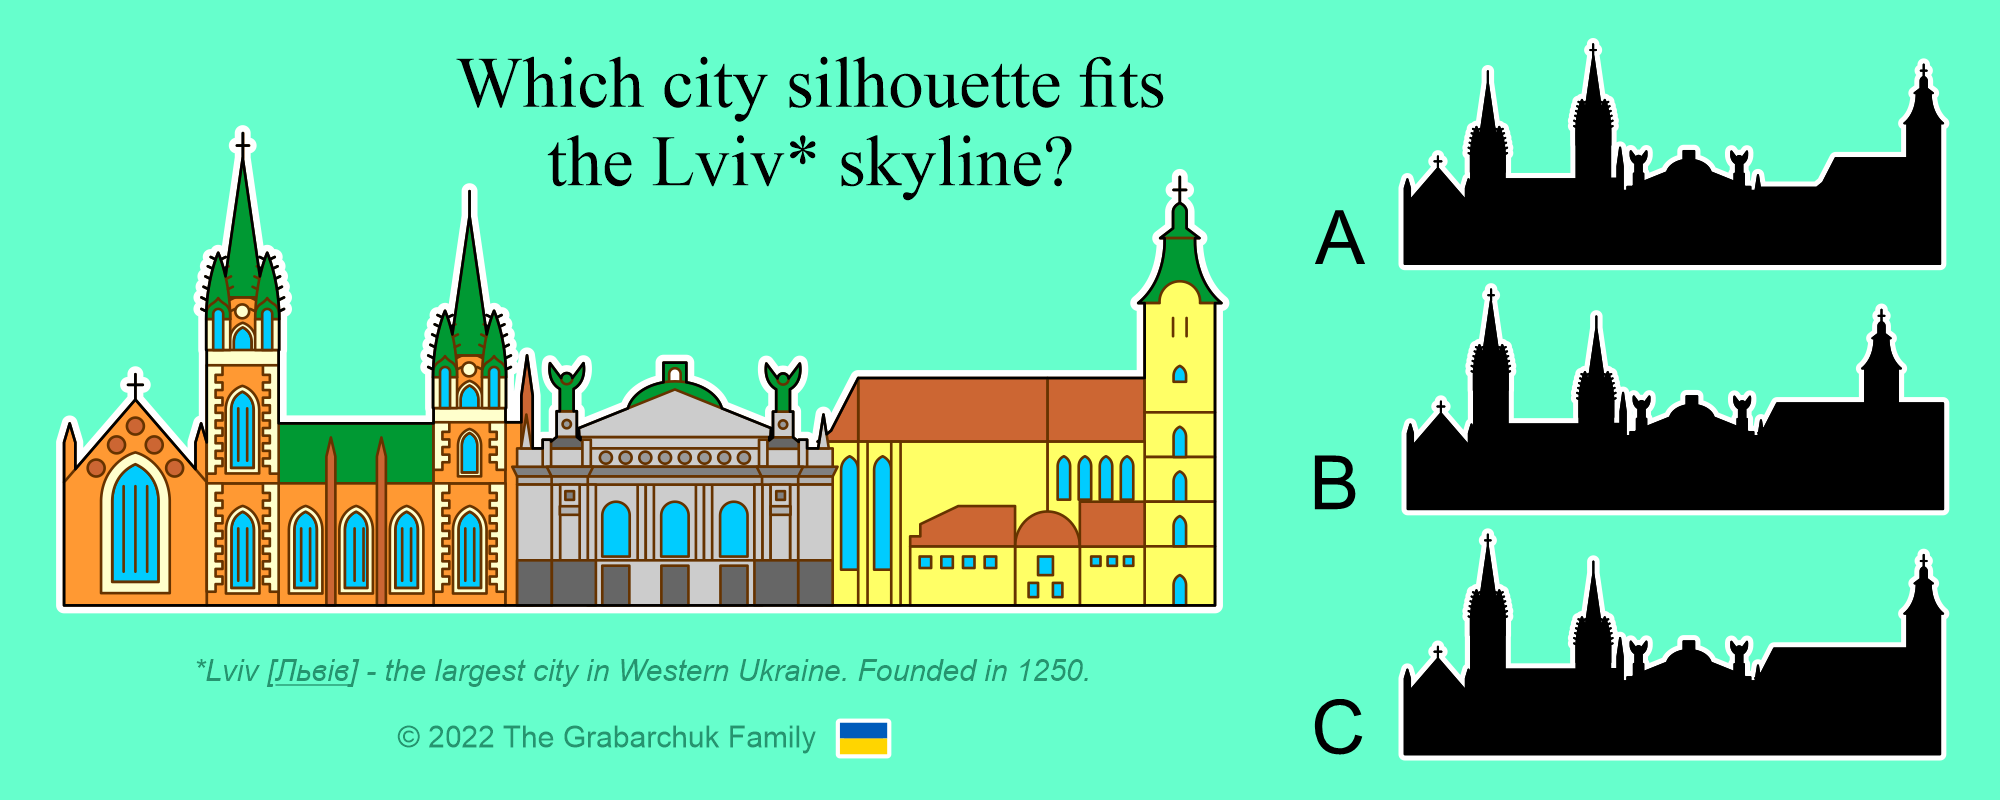 Lviv Skyline